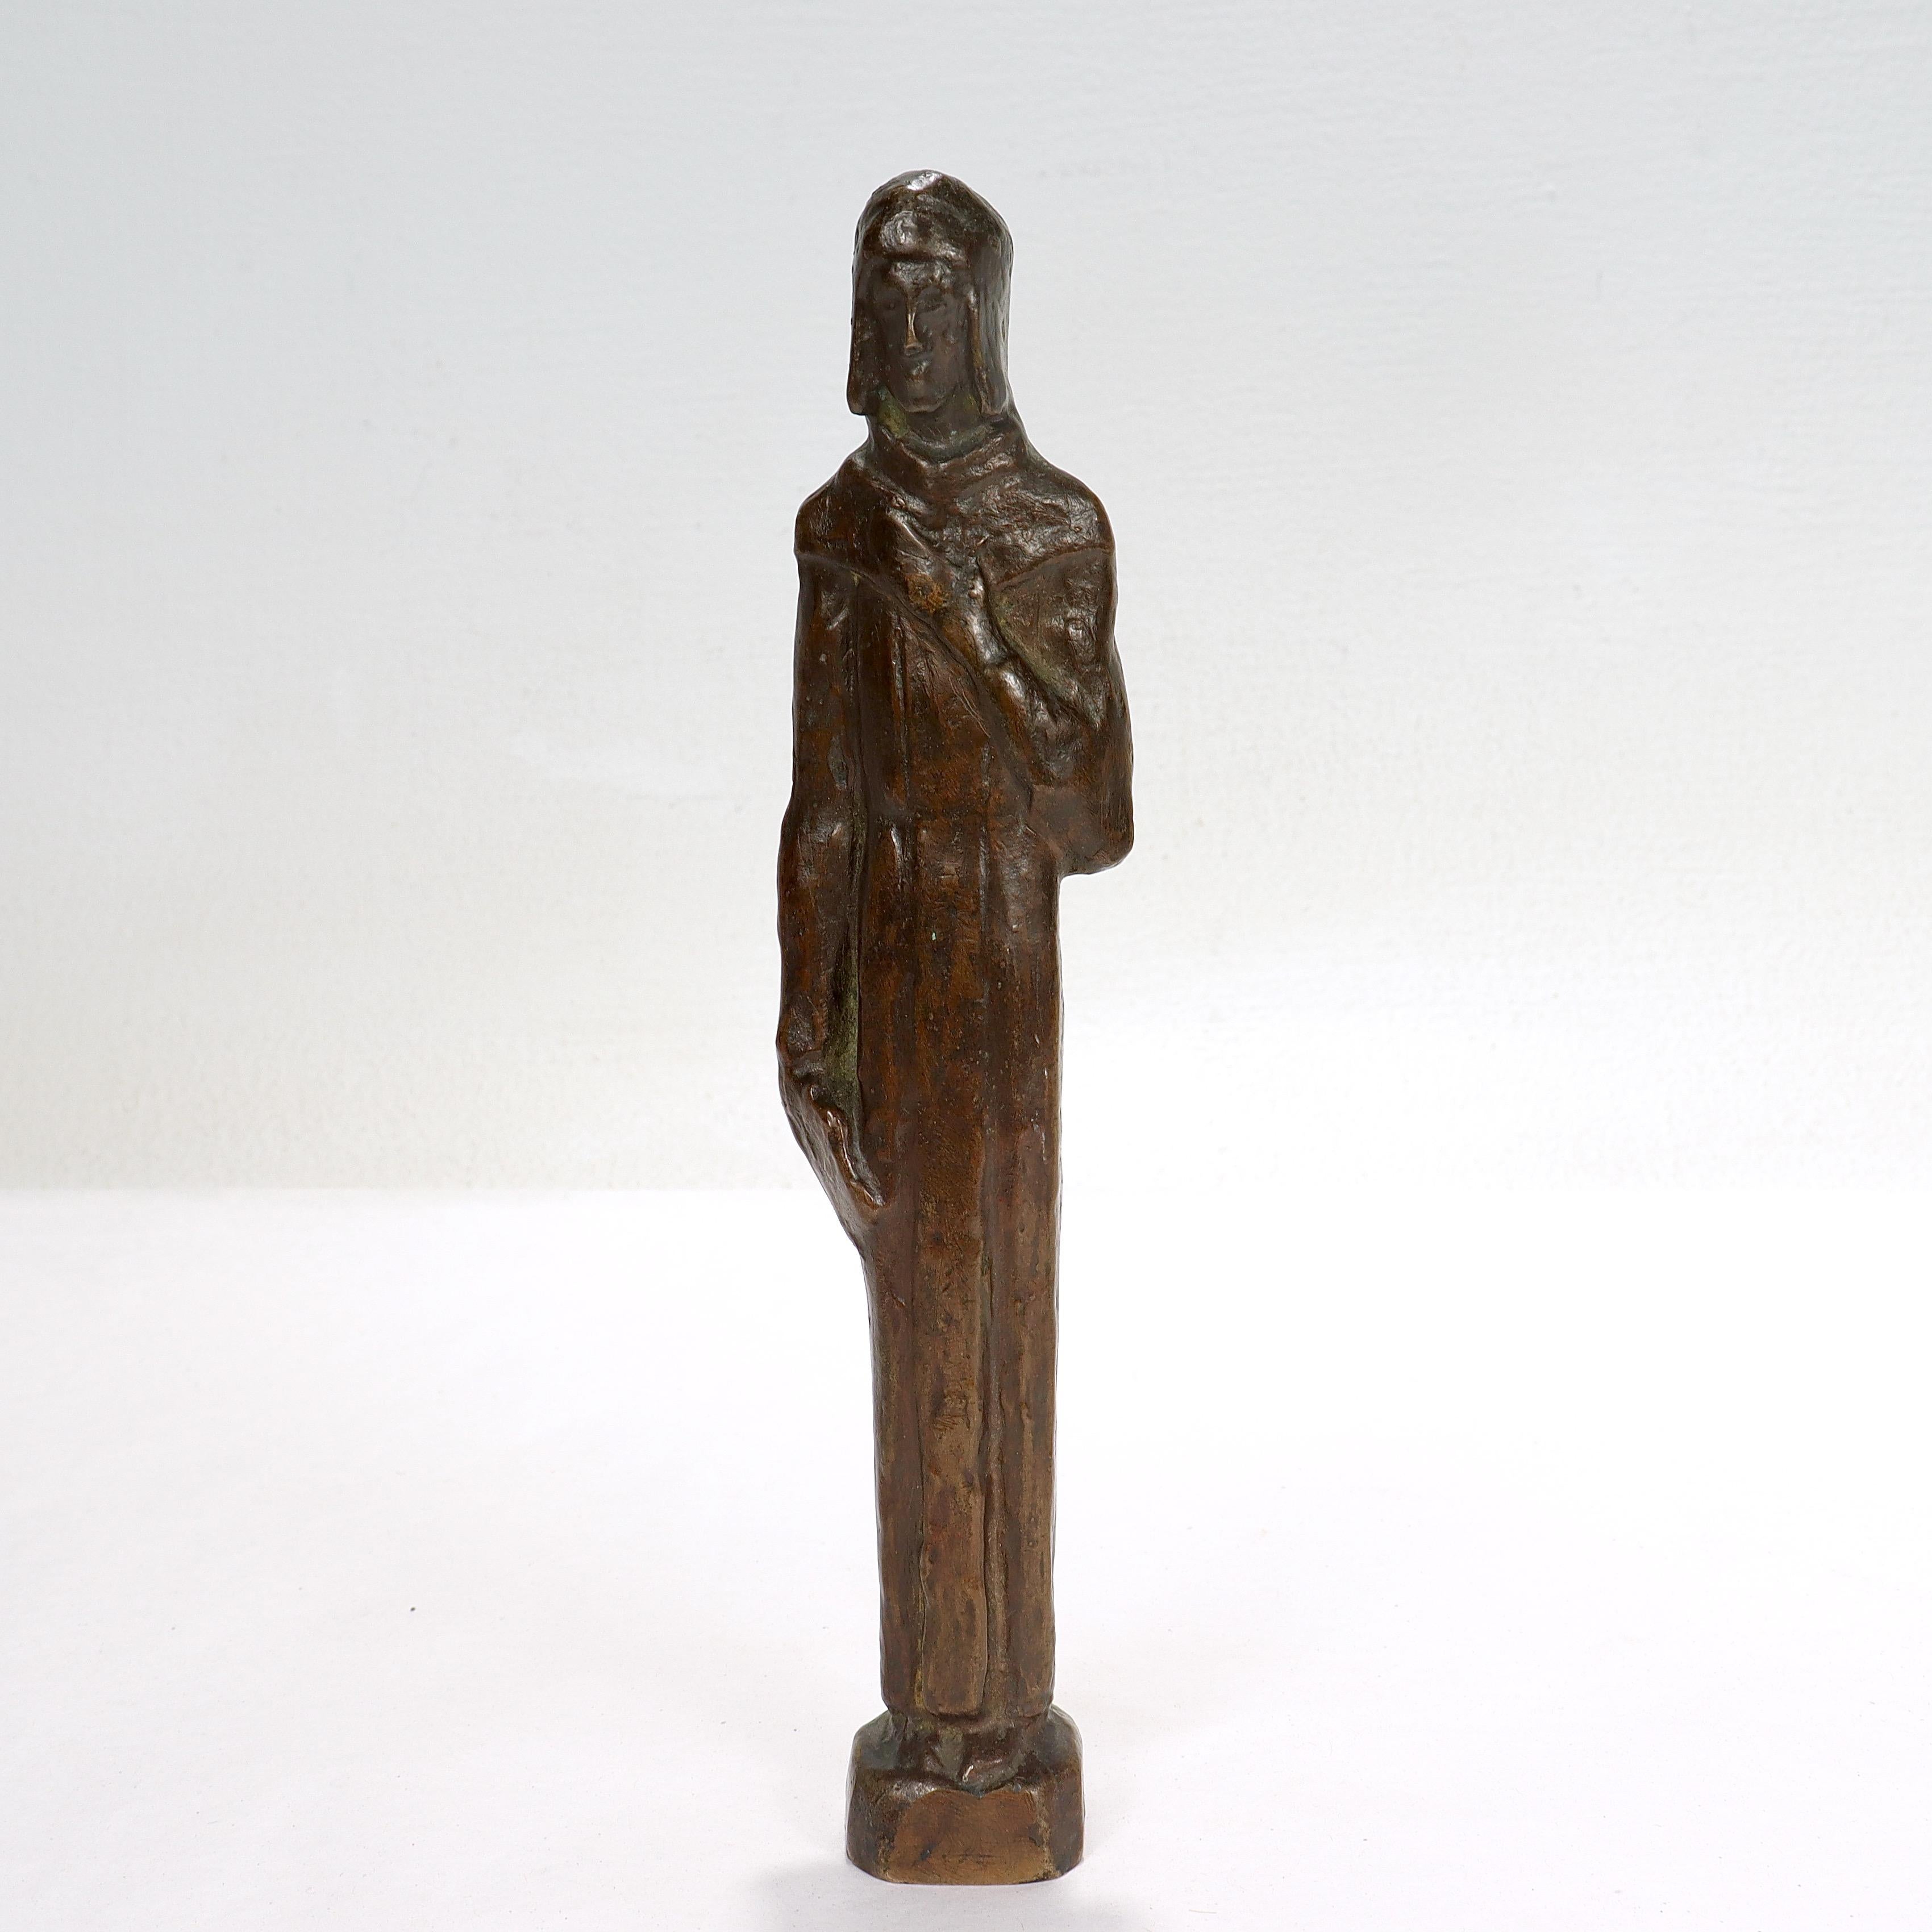 Une belle sculpture en bronze de style moderne du milieu du siècle.

Sous la forme d'un moine franciscain.

Le socle est doté d'un insert ultérieur en cuivre et d'un filetage pour un montage éventuel sur une plinthe. 

Tout simplement une